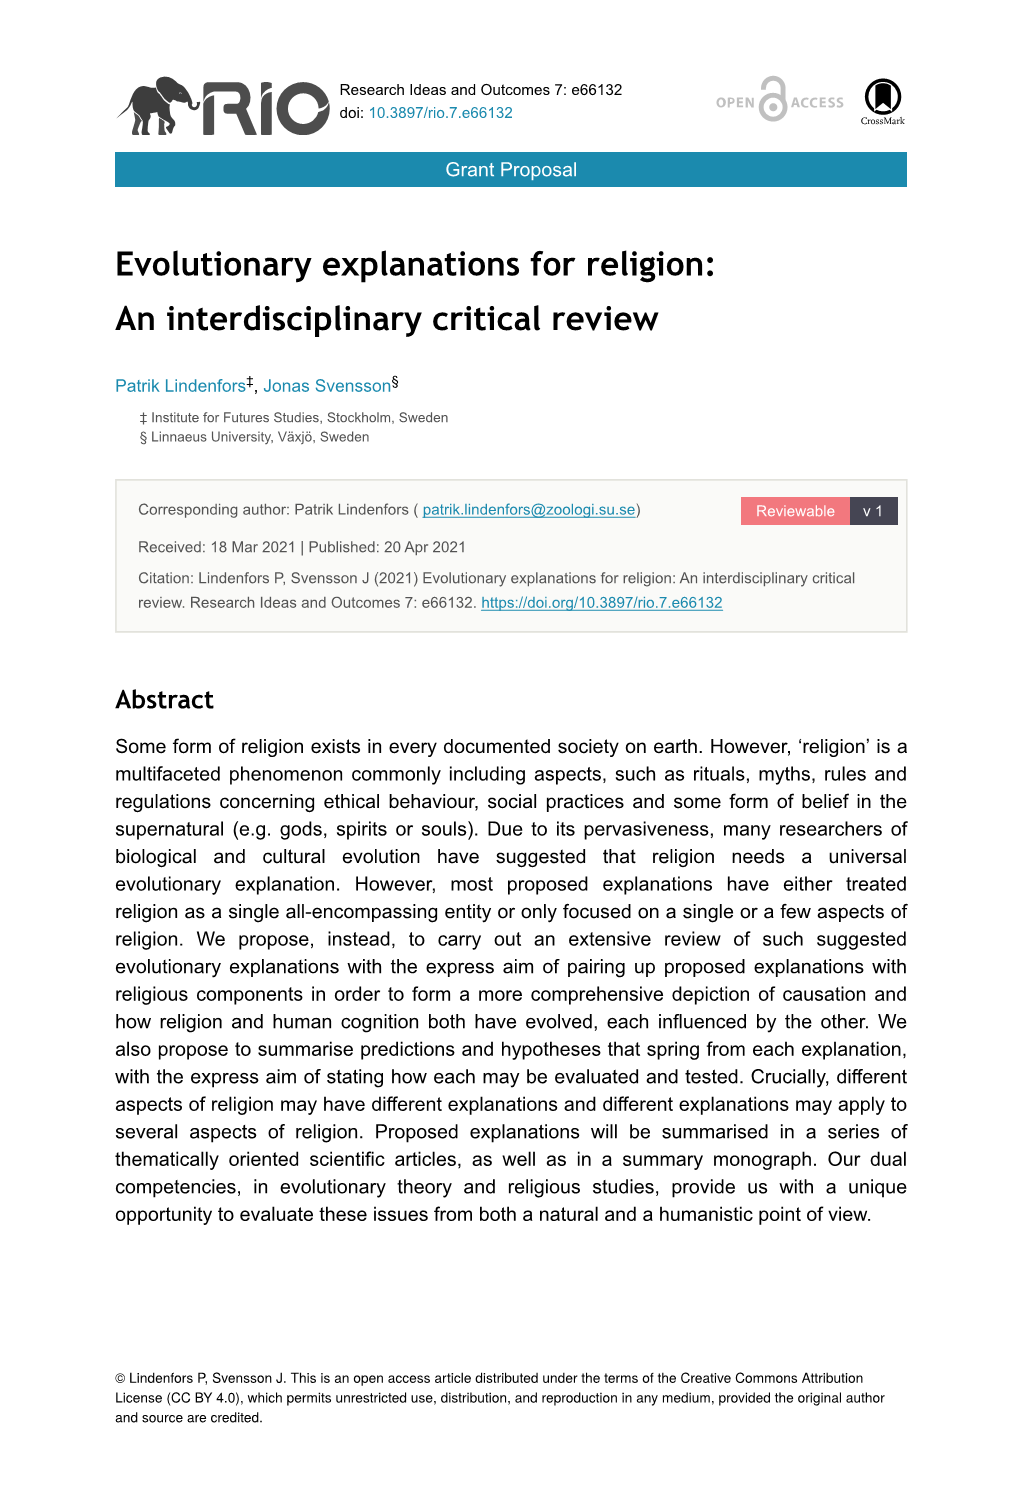 Evolutionary Explanations for Religion: an Interdisciplinary Critical Review